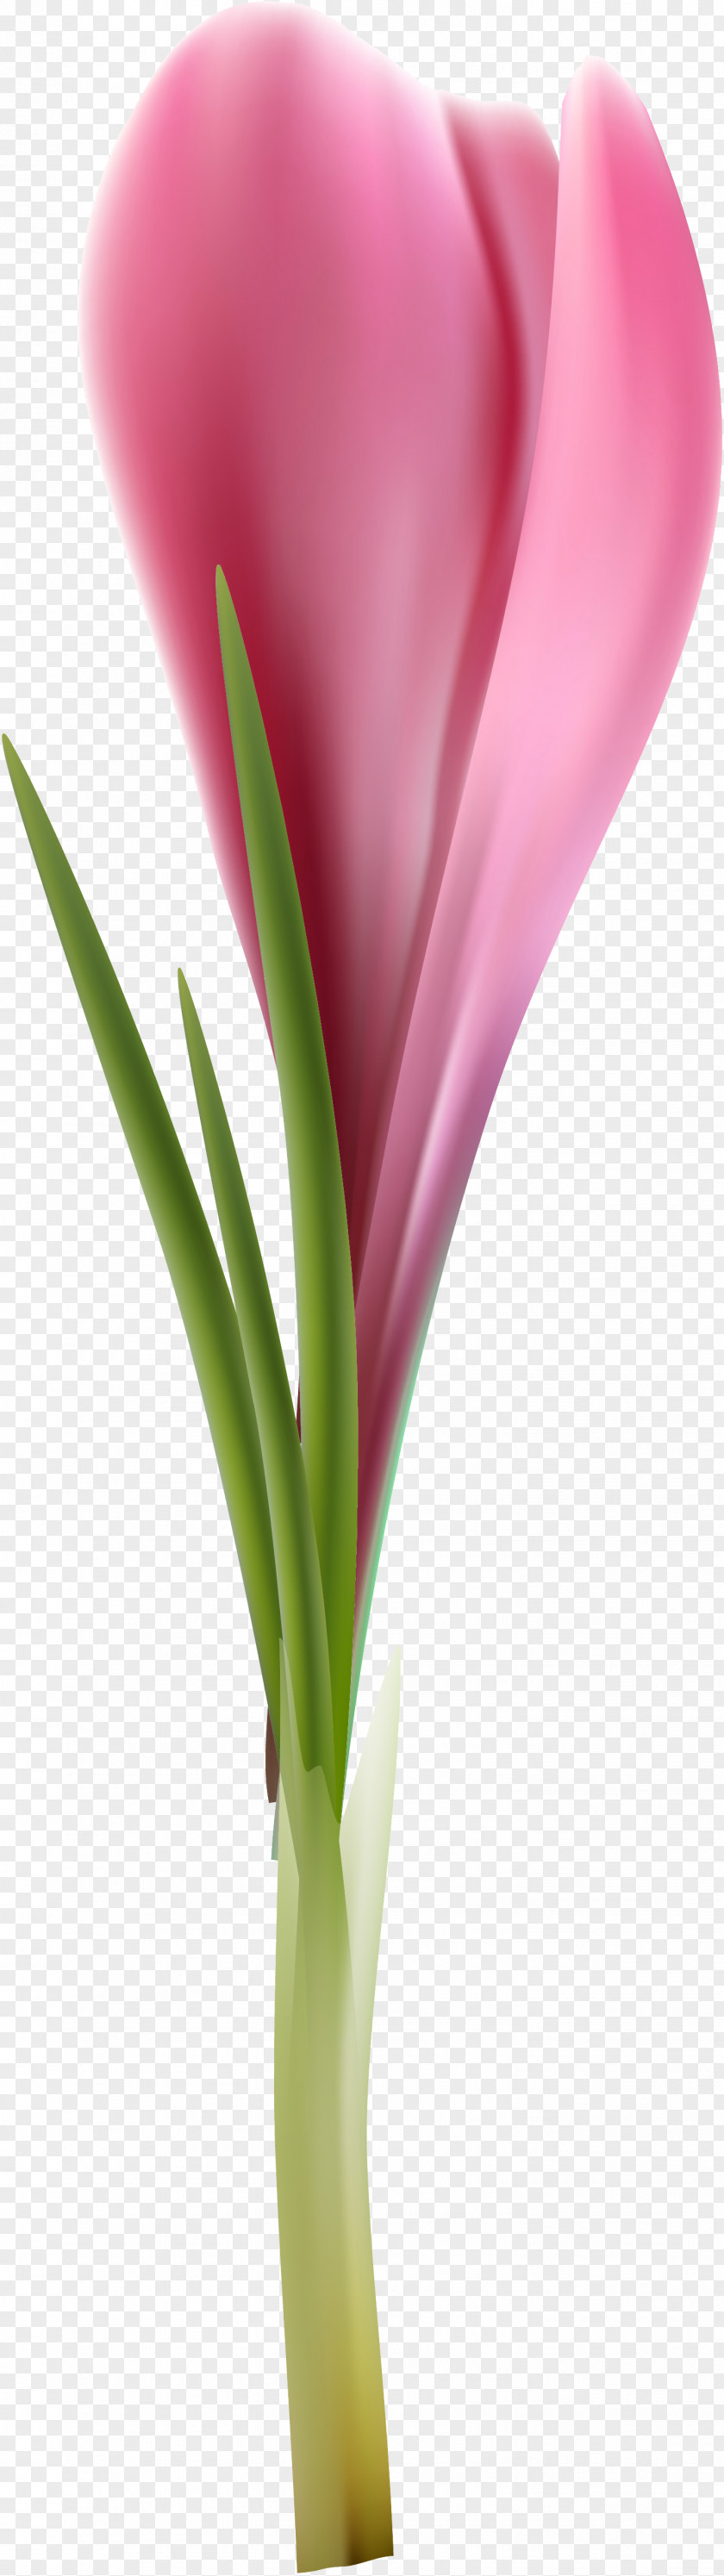 Tulip Cut Flowers Petal Plant Stem Flowerpot PNG